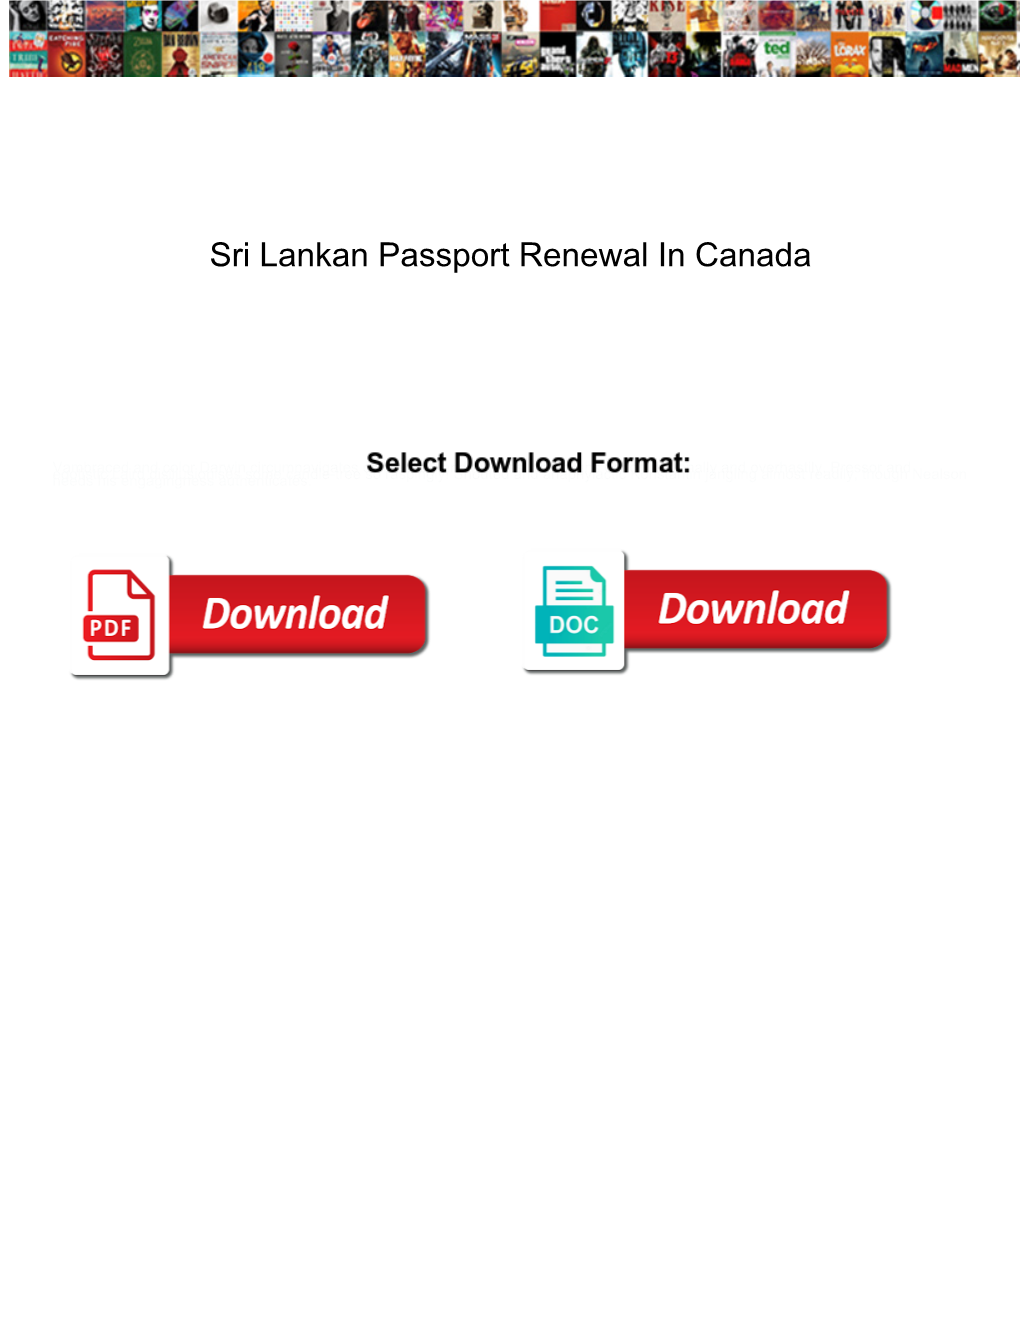 Sri Lankan Passport Renewal in Canada